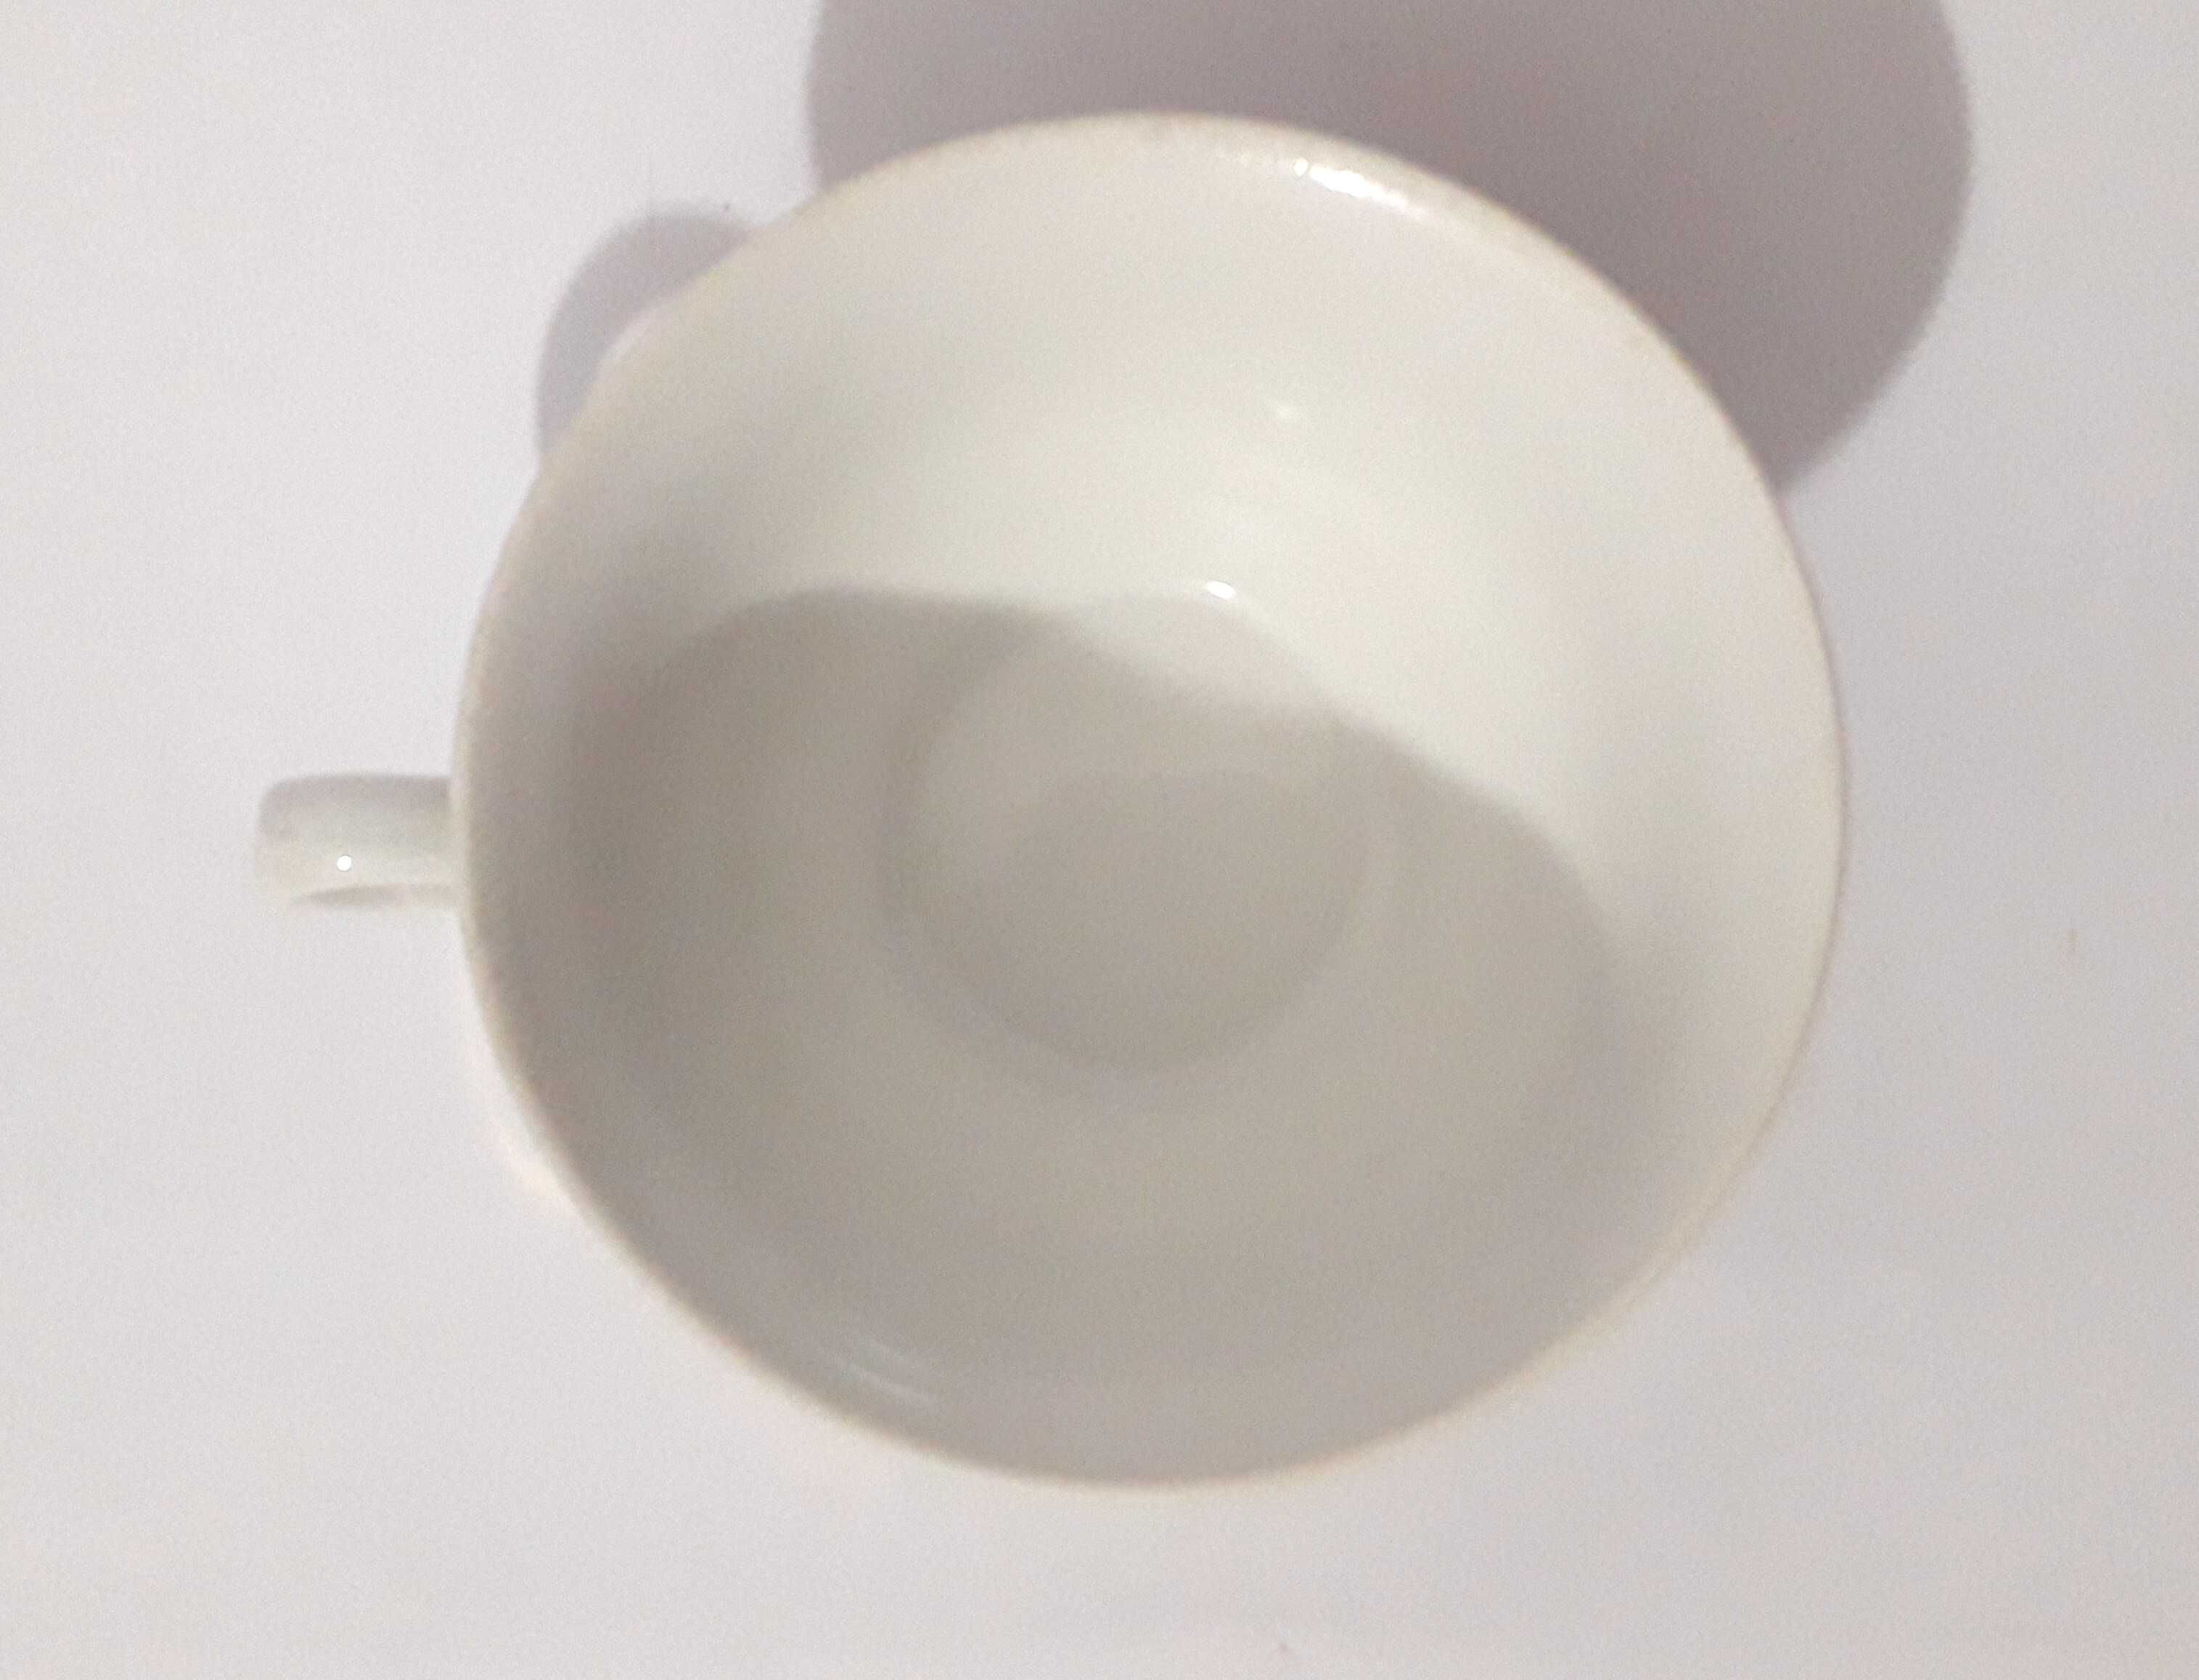 Chávena de porcelana com motivo floral Visavi